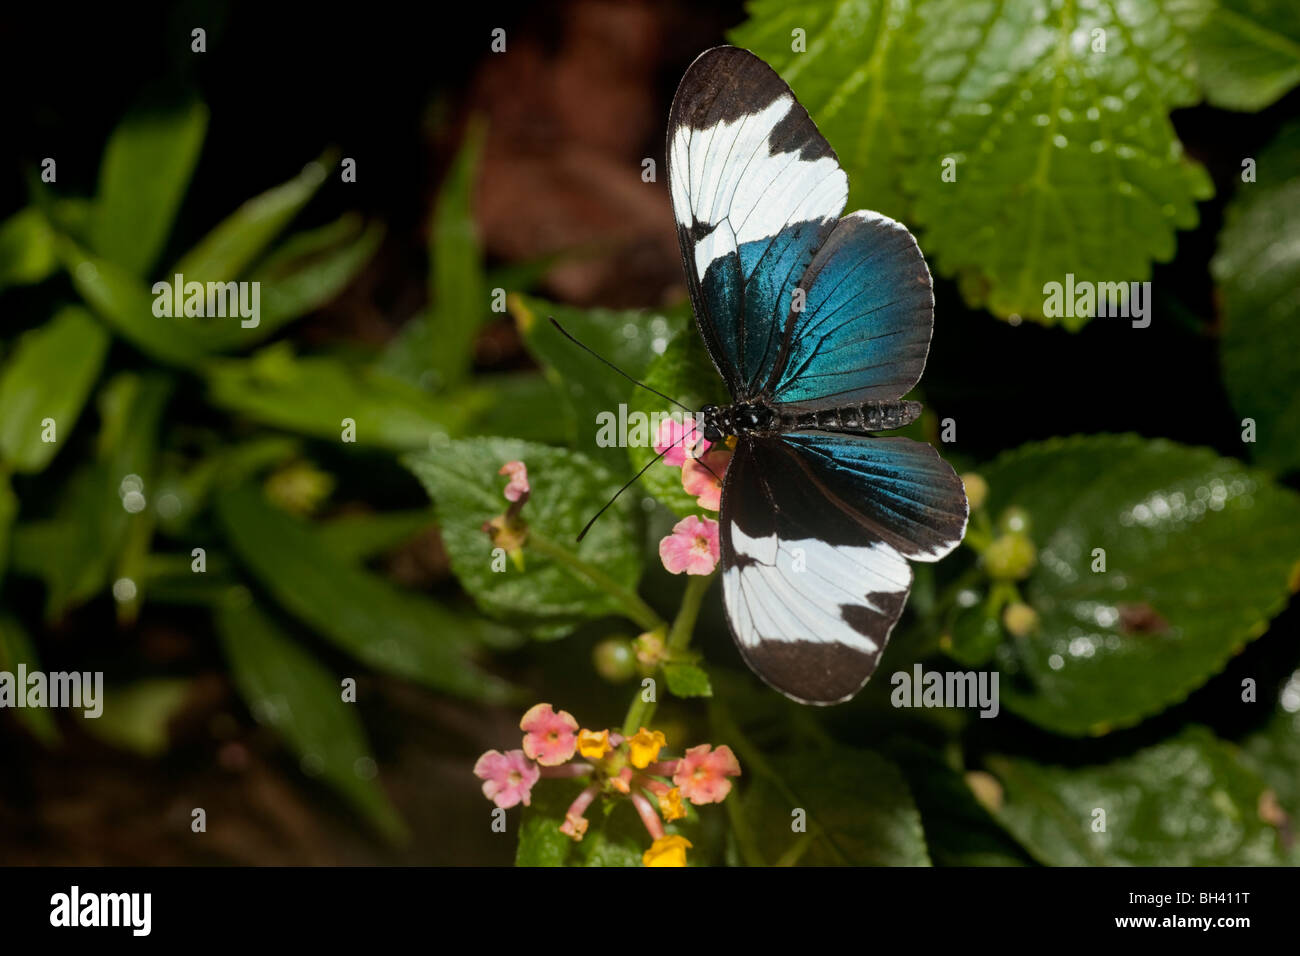 Heliconius Sapho Schmetterling aus Costa Rica, ist schwarz und weiß, sondern hat einen schillernde blaue metallische Glanz. Stockfoto